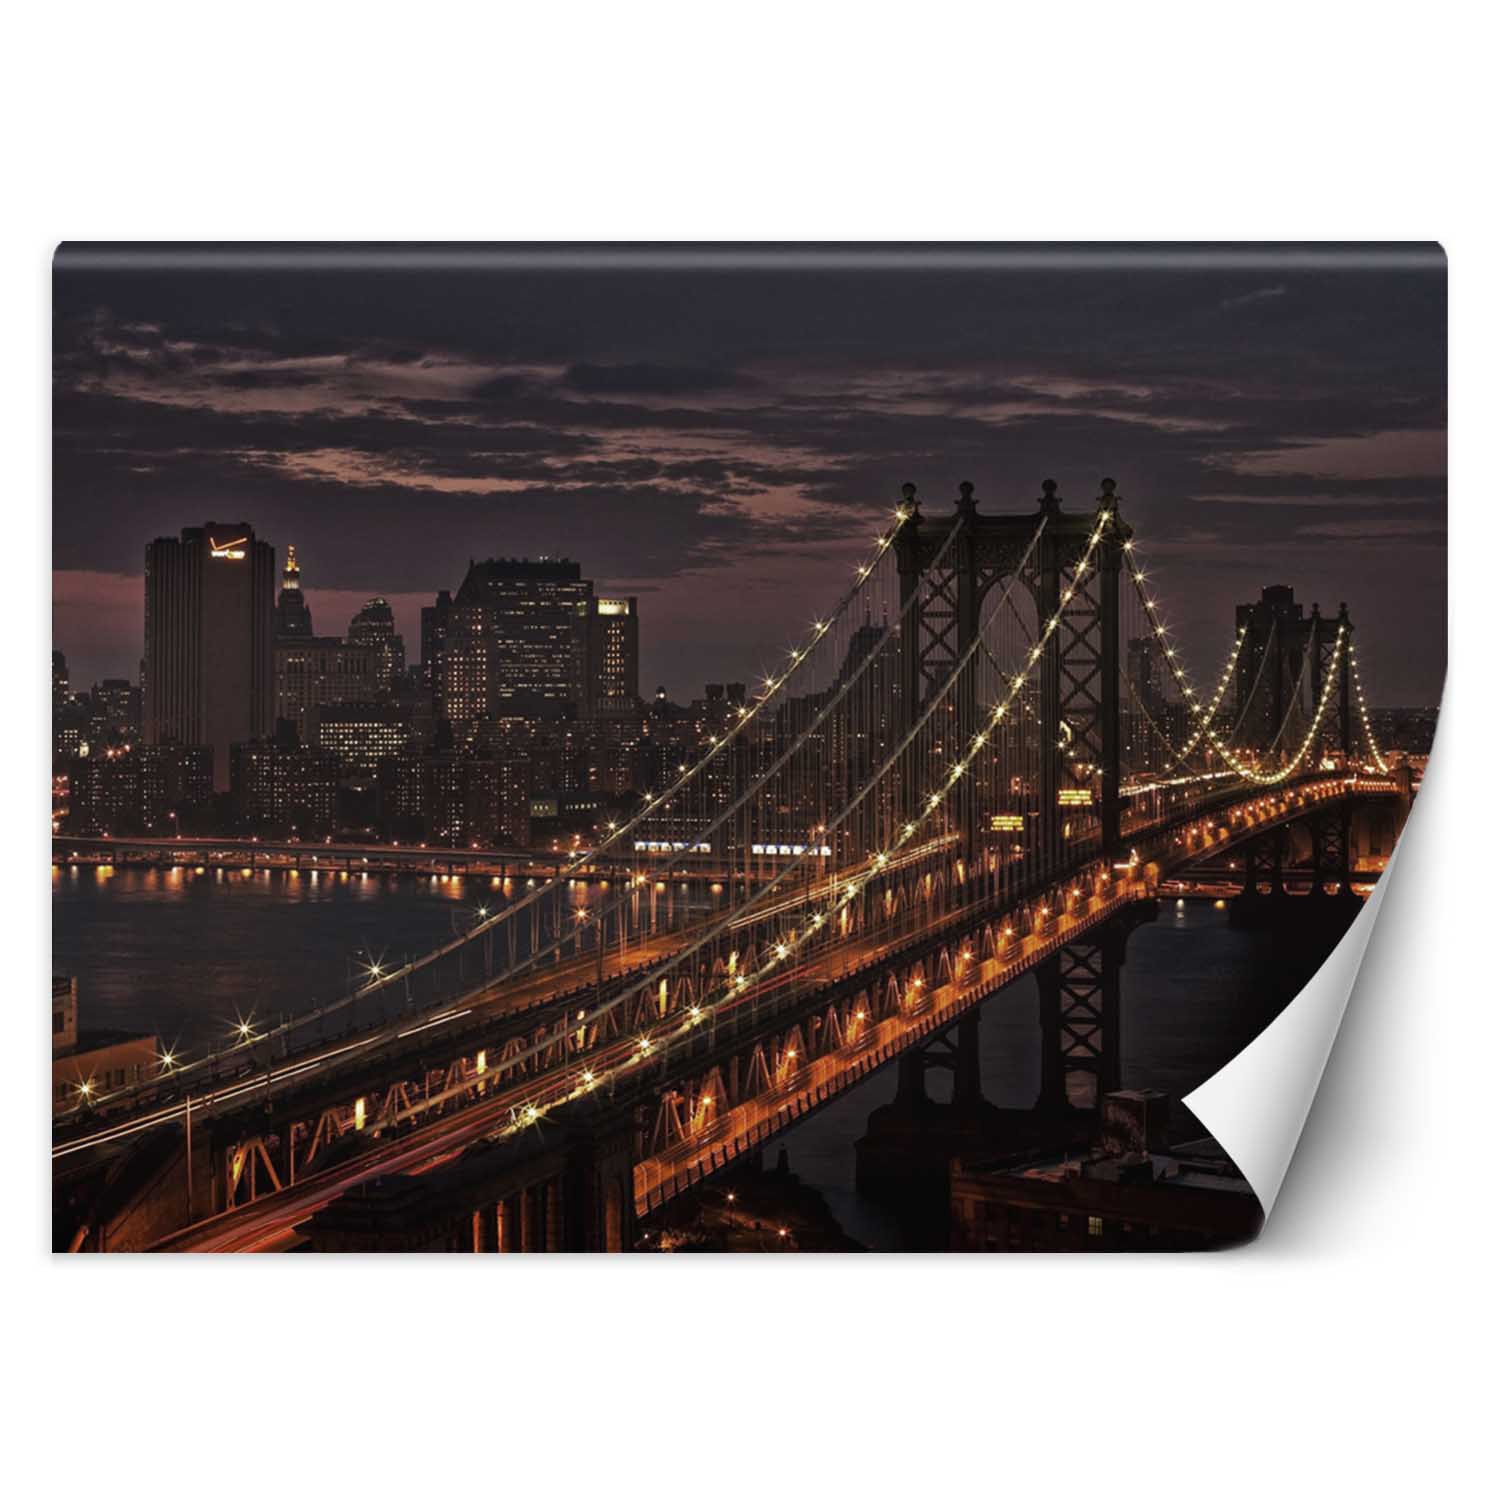 Trend24 – Behang – New York City Bridge – Behangpapier – Fotobehang – Behang Woonkamer – 450x315x2 cm – Incl. behanglijm